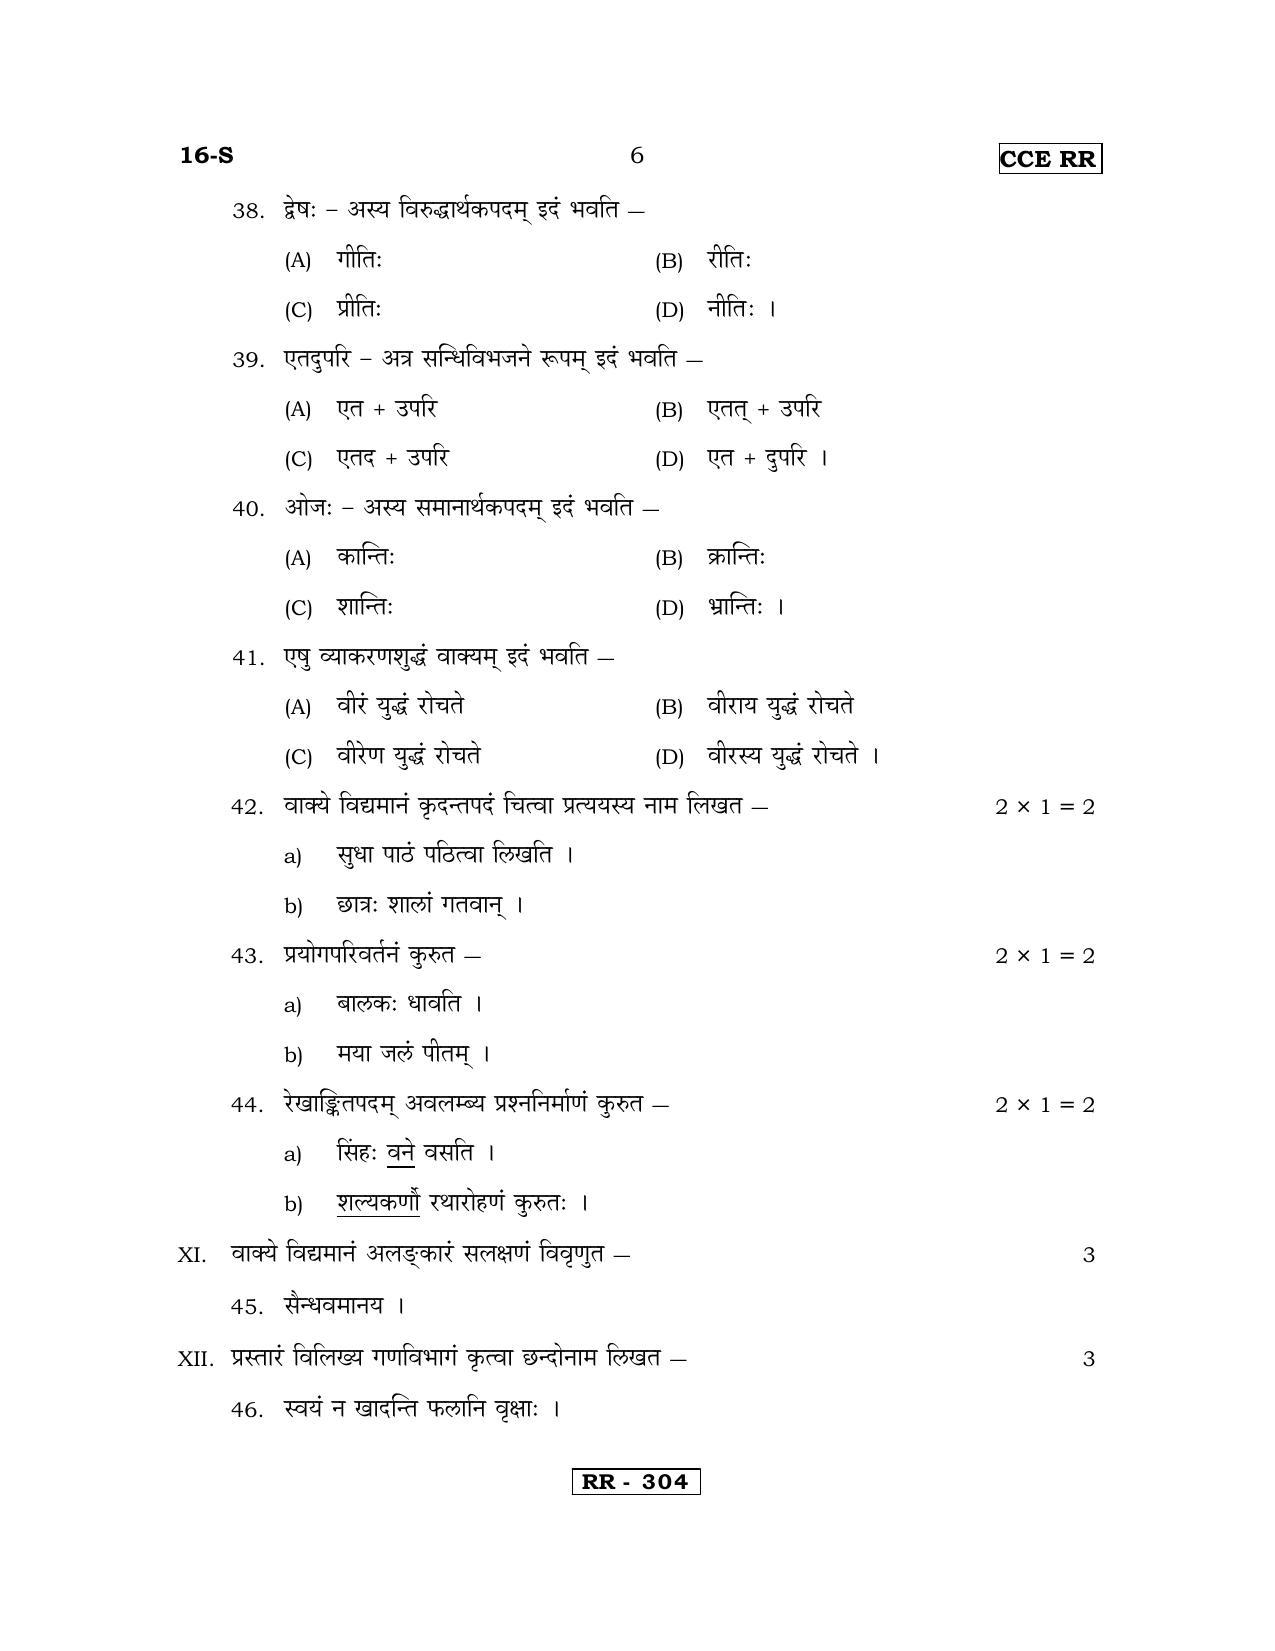 Karnataka SSLC Sanskrit - First Language - SANSKRIT (16-S-CCE RR UNREVISED_17) April 2018 Question Paper - Page 6